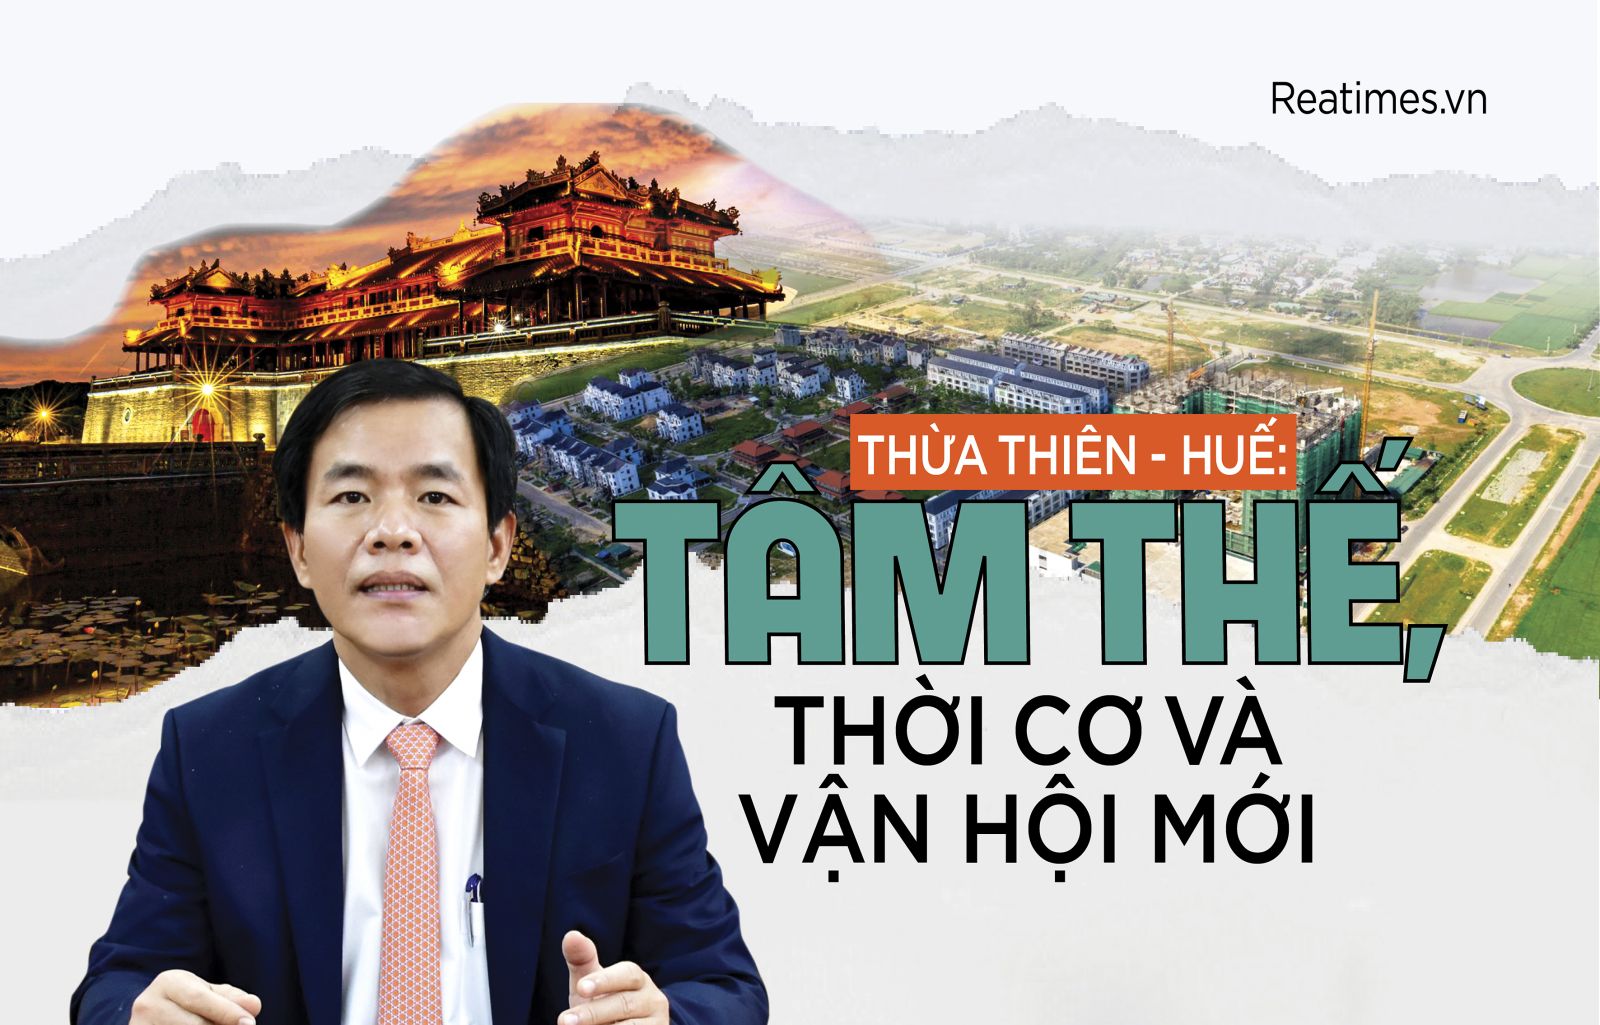 Thừa Thiên - Huế: Tâm thế, thời cơ và vận hội mới